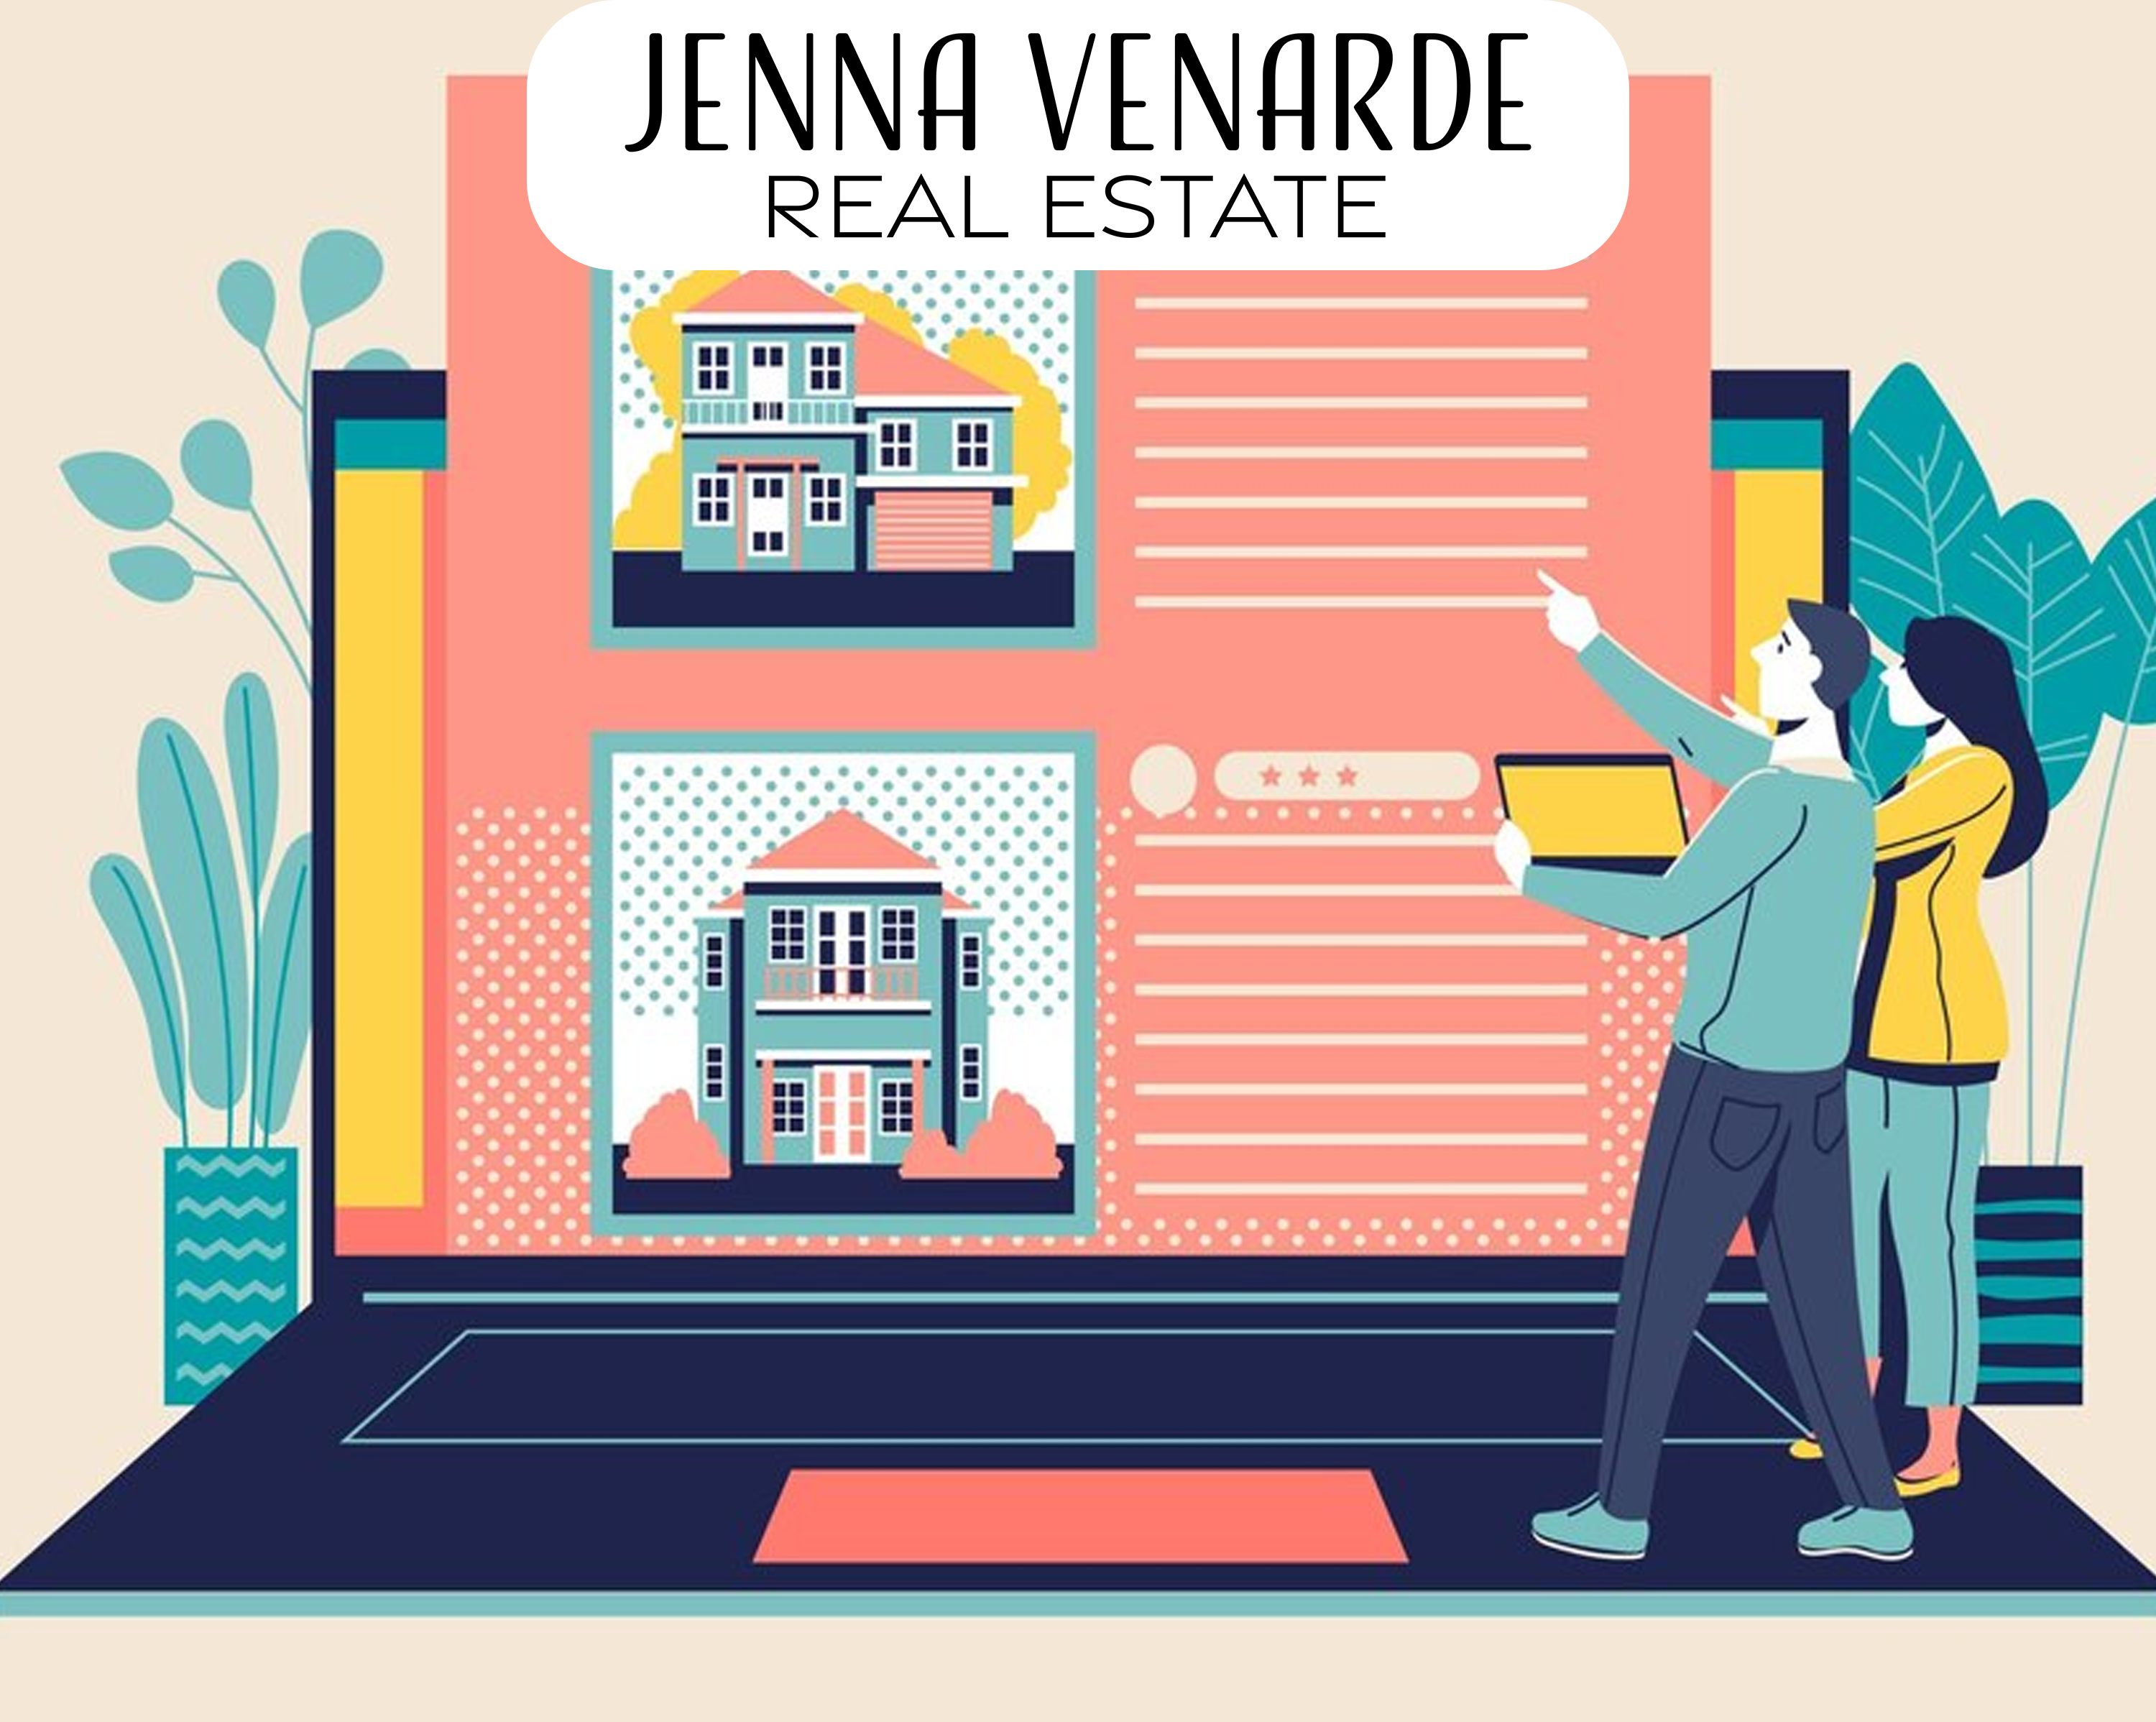 Conejo Valley, CA - Jenna Venarde Real Estate